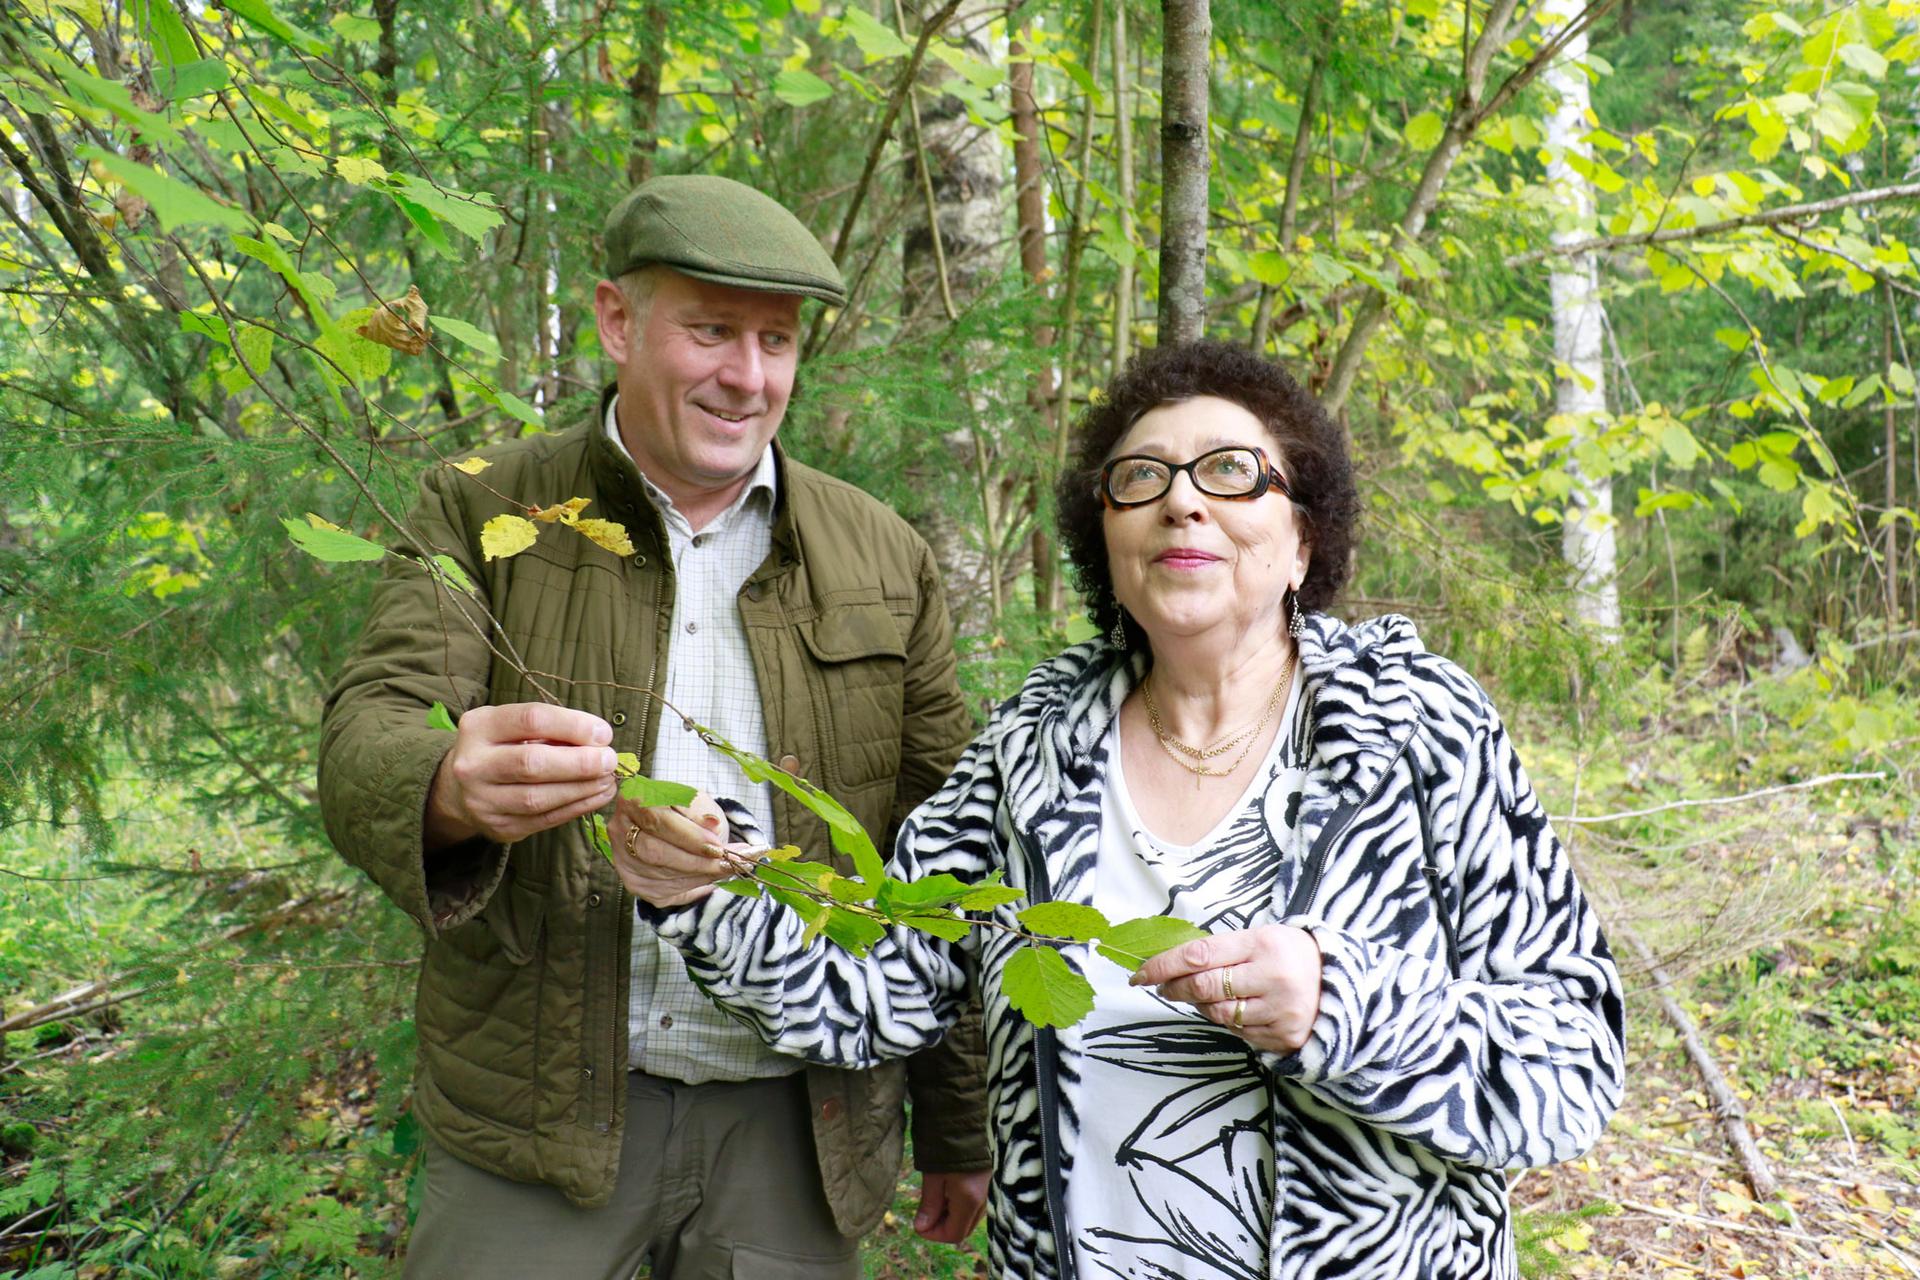 Iiris Vaasio-Saarisen ja Markus Jaskarin omistama pähkinäpensaslehto on nyt yksityinen luonnonsuojelualue. Suurin osa pensaista on vielä pienikokoisia, mutta alueelta löytyy useampiakin täysikasvuisia yksilöitä.